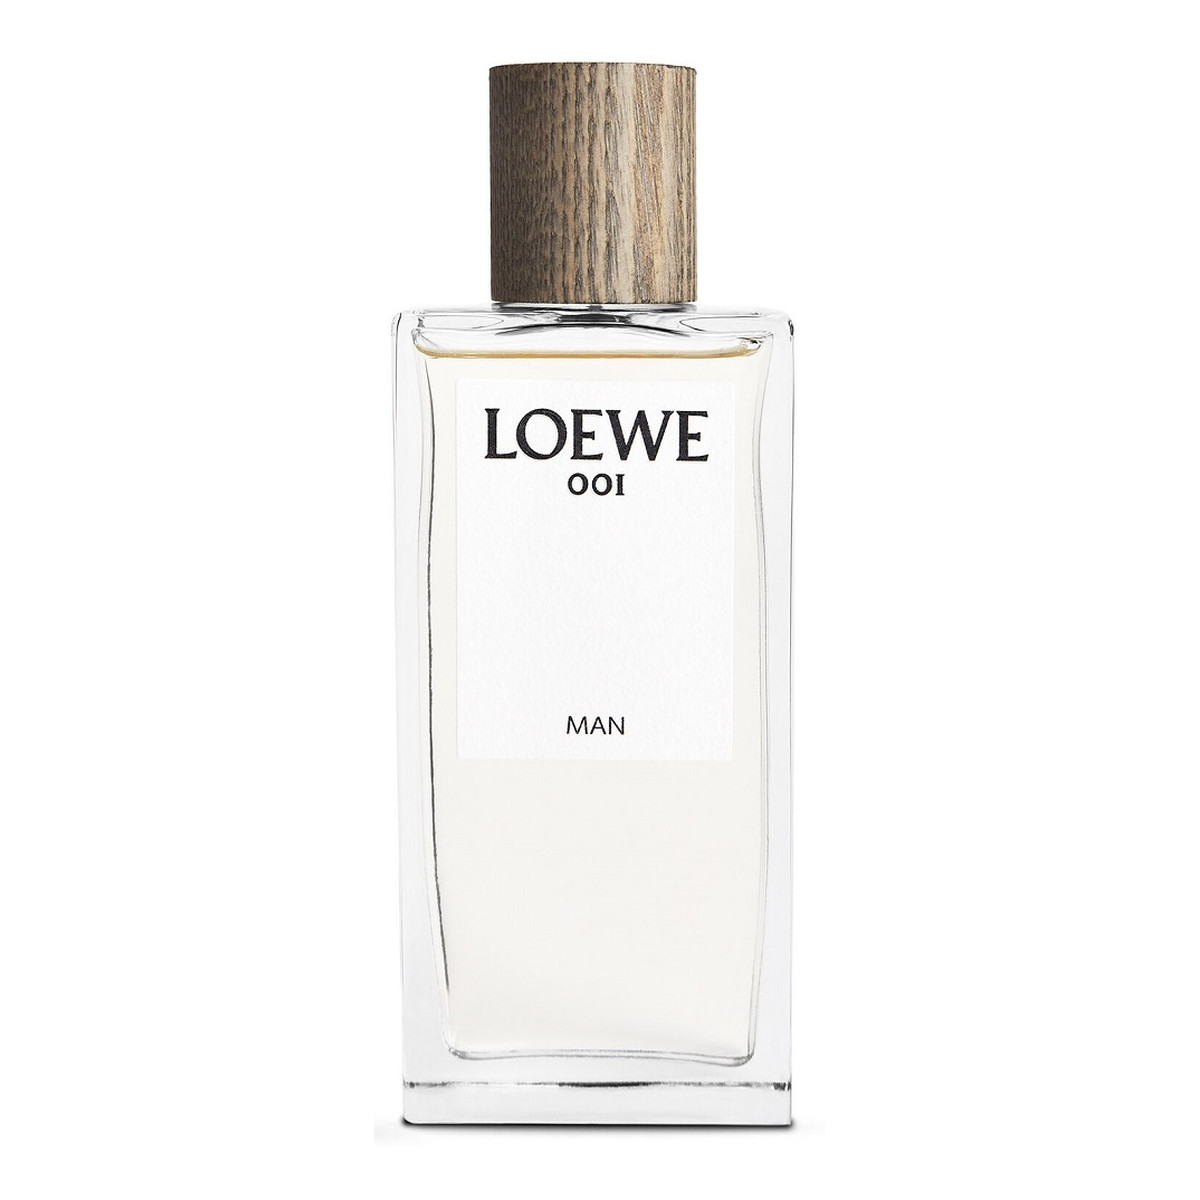 Loewe 001 Man Woda perfumowana spray 100ml